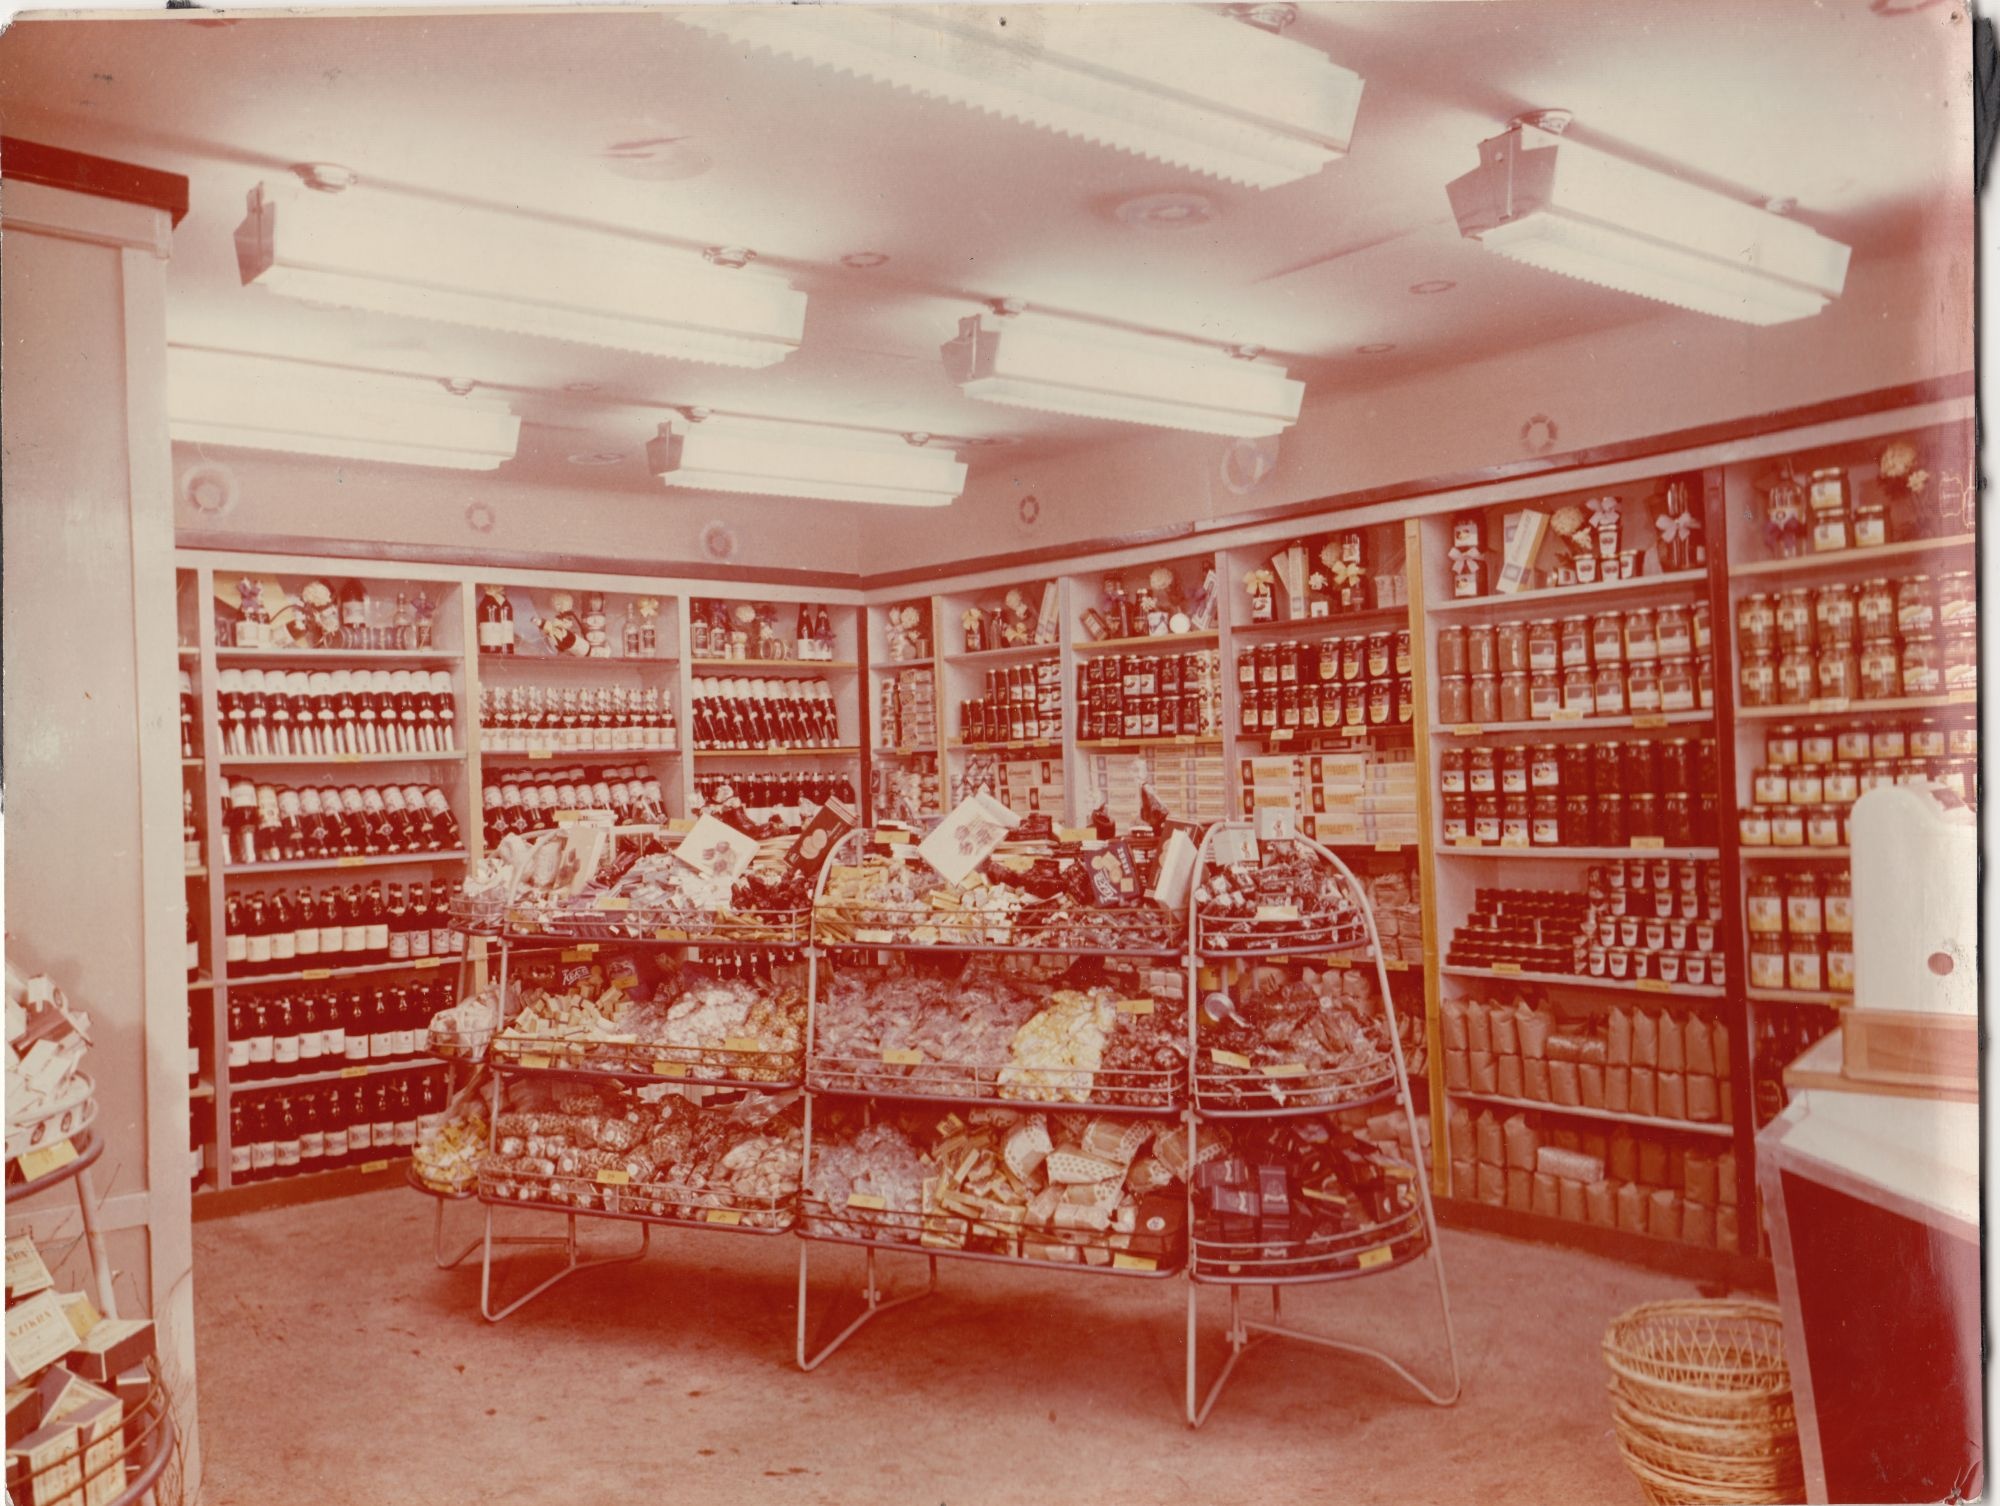 színes fénykép, Mauthner Sándor utcai bolt belseje (Angyalföldi Helytörténeti Gyűjtemény CC BY-NC-SA)